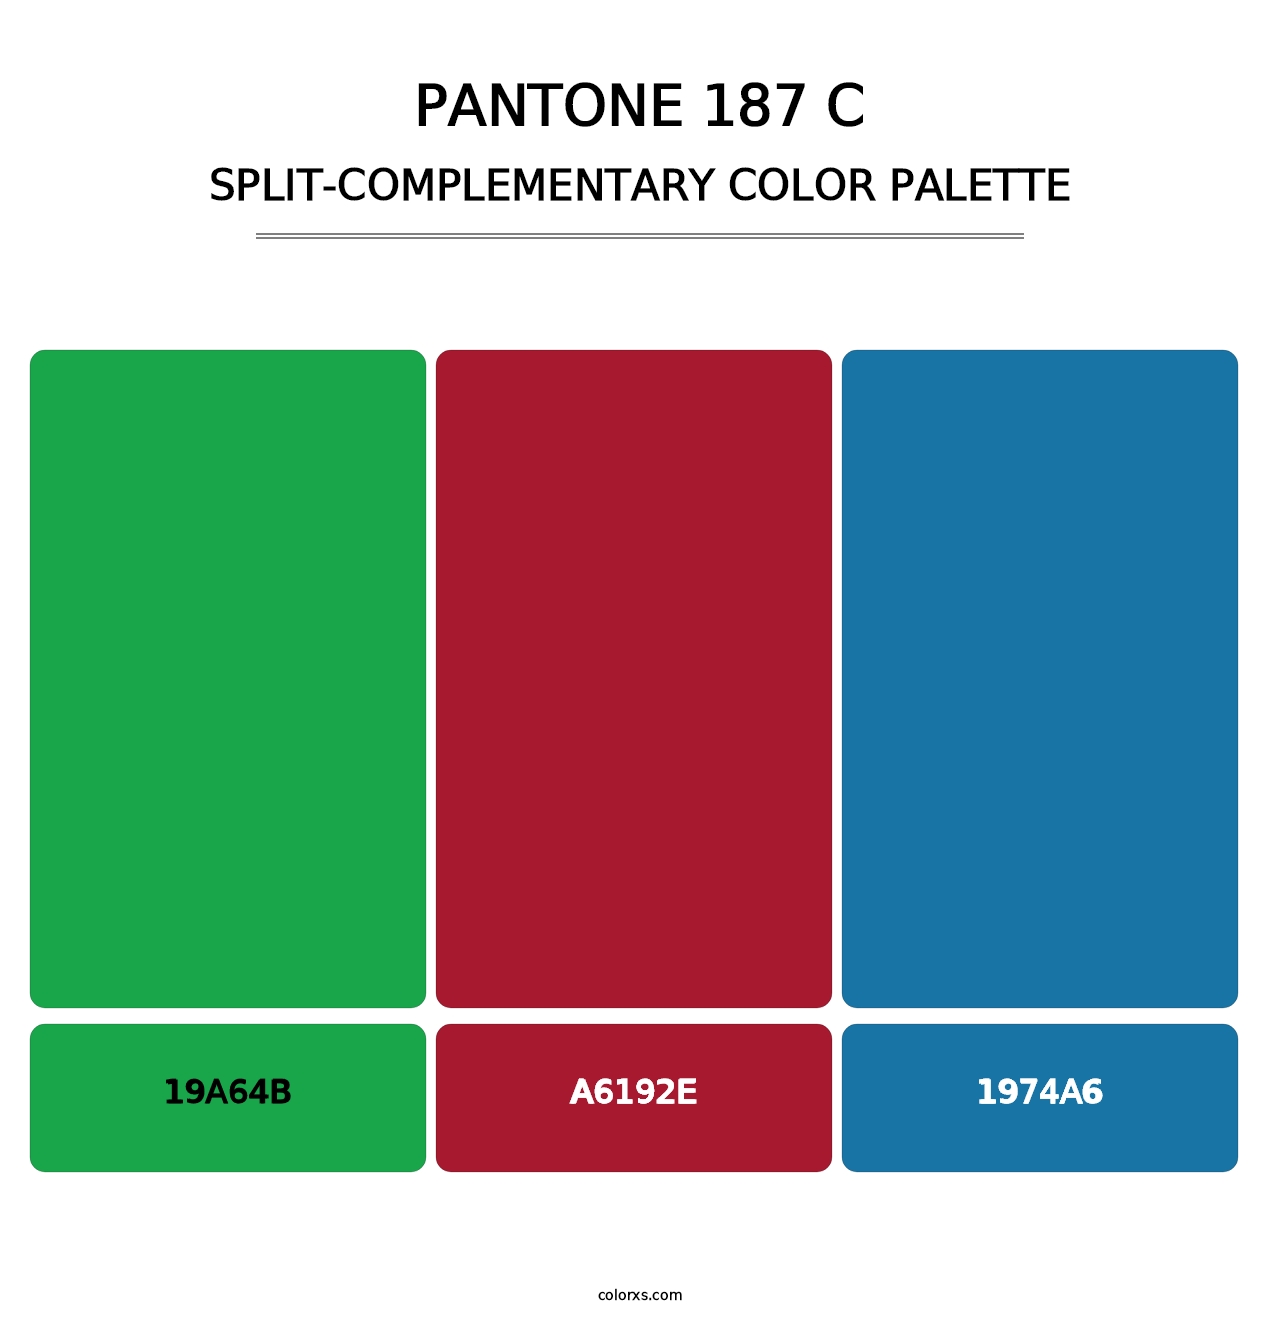 PANTONE 187 C - Split-Complementary Color Palette